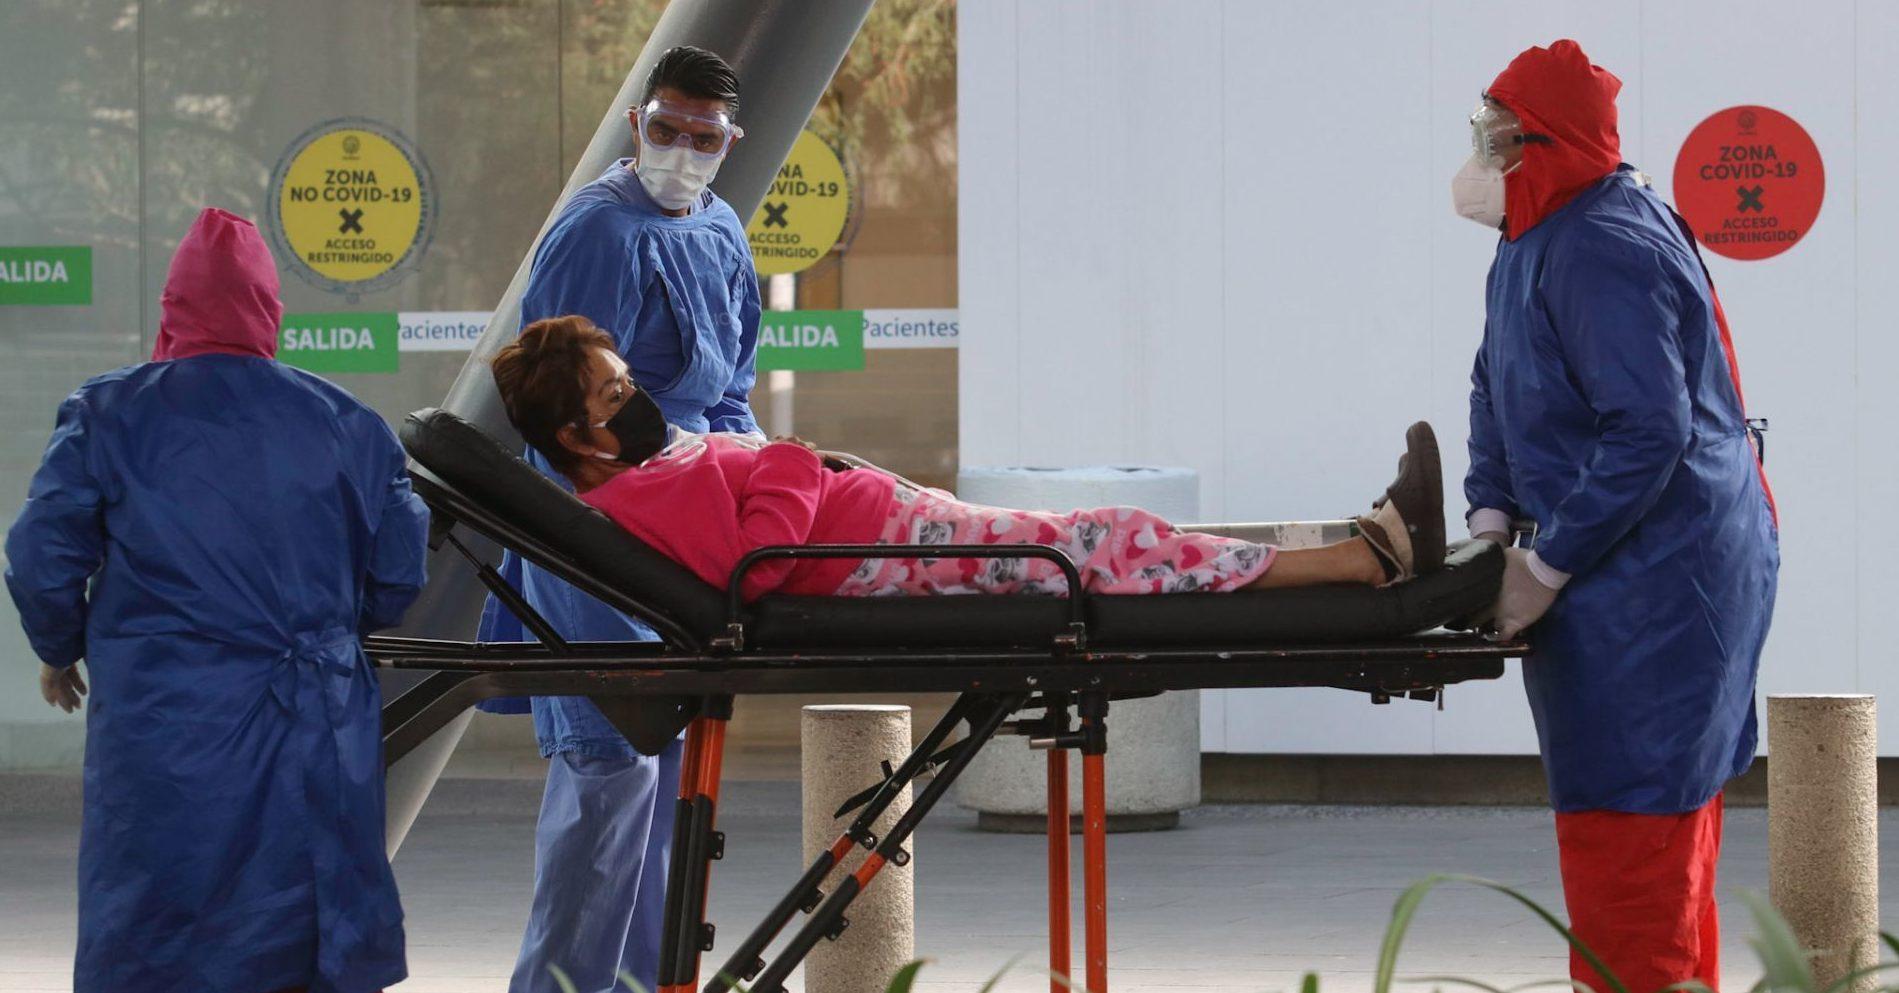 Los ciudadanos decidieron que era suficiente COVID y hospitales volvieron al caos: personal de salud